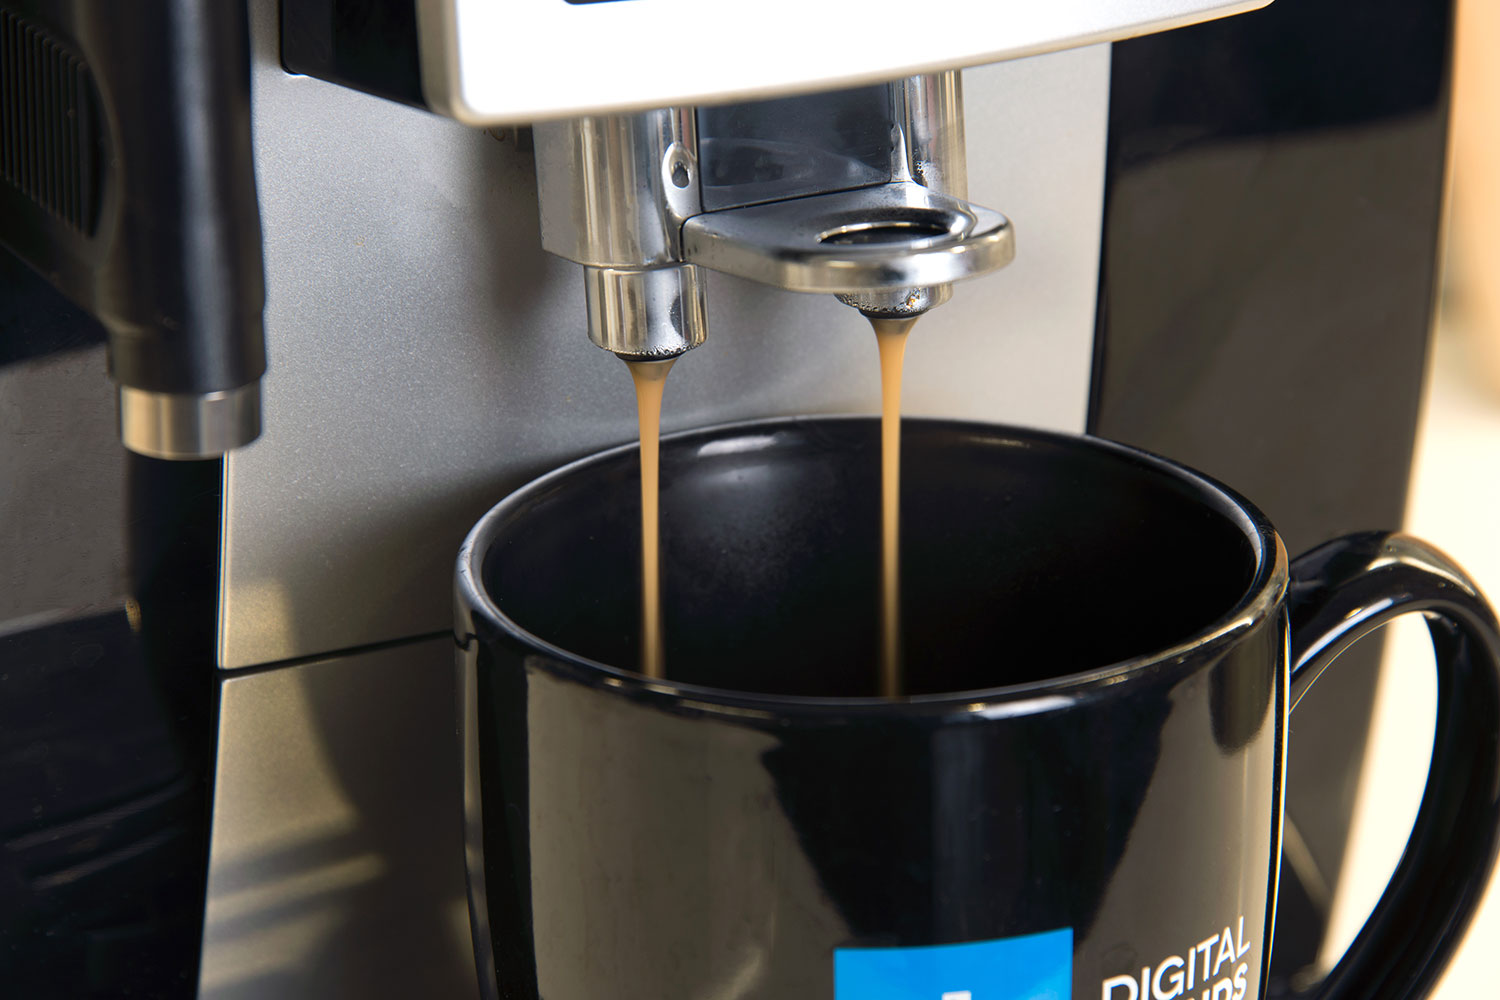 De'Longhi ECAM23260SB Magnifica S Smart Cappuccino Machine - Black